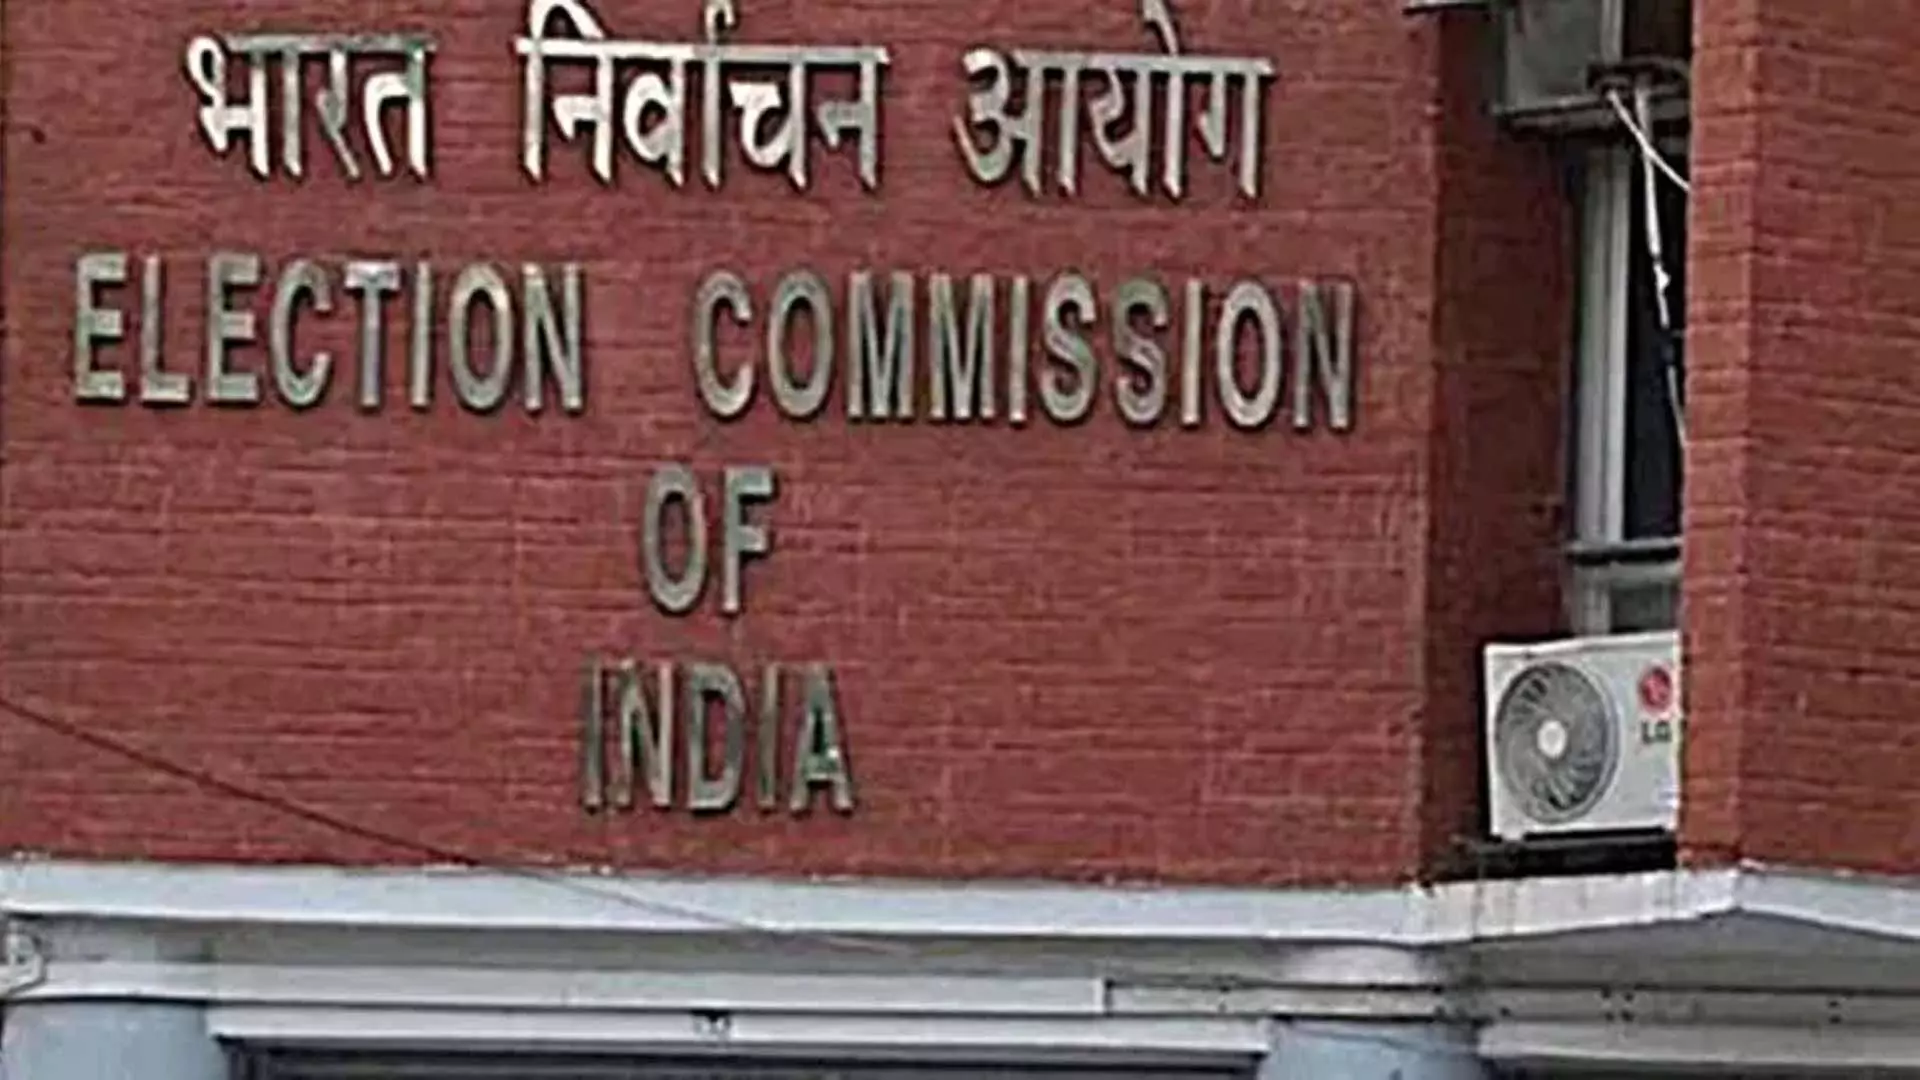 राजनेताओं के खिलाफ जांच- कानूनी प्रक्रिया को ओवरलैप करने वाले कदम उठाना सही नहीं: चुनाव आयोग